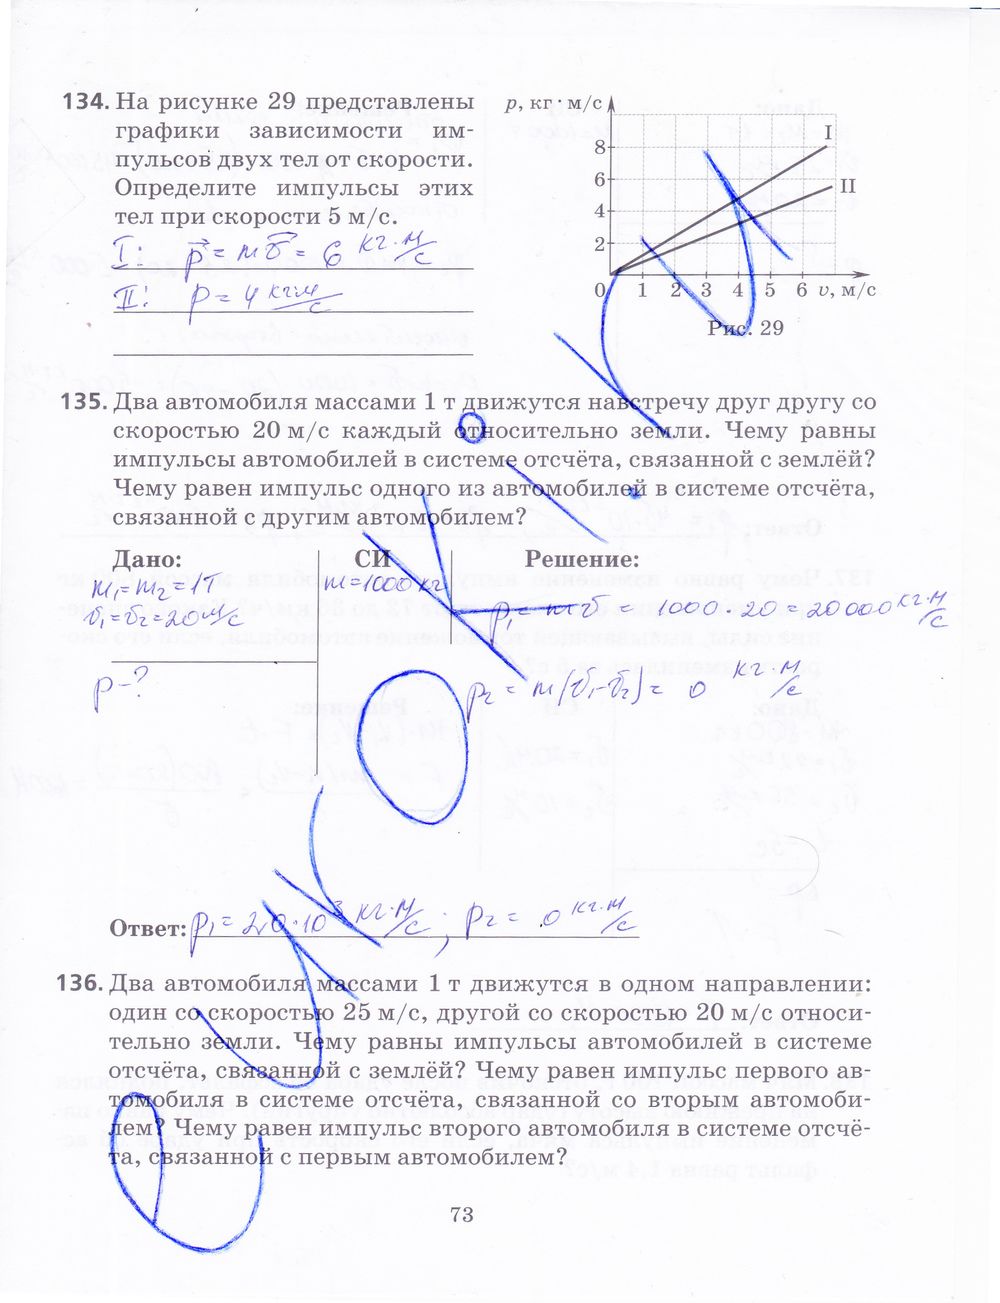 ГДЗ Физика 9 класс - стр. 73